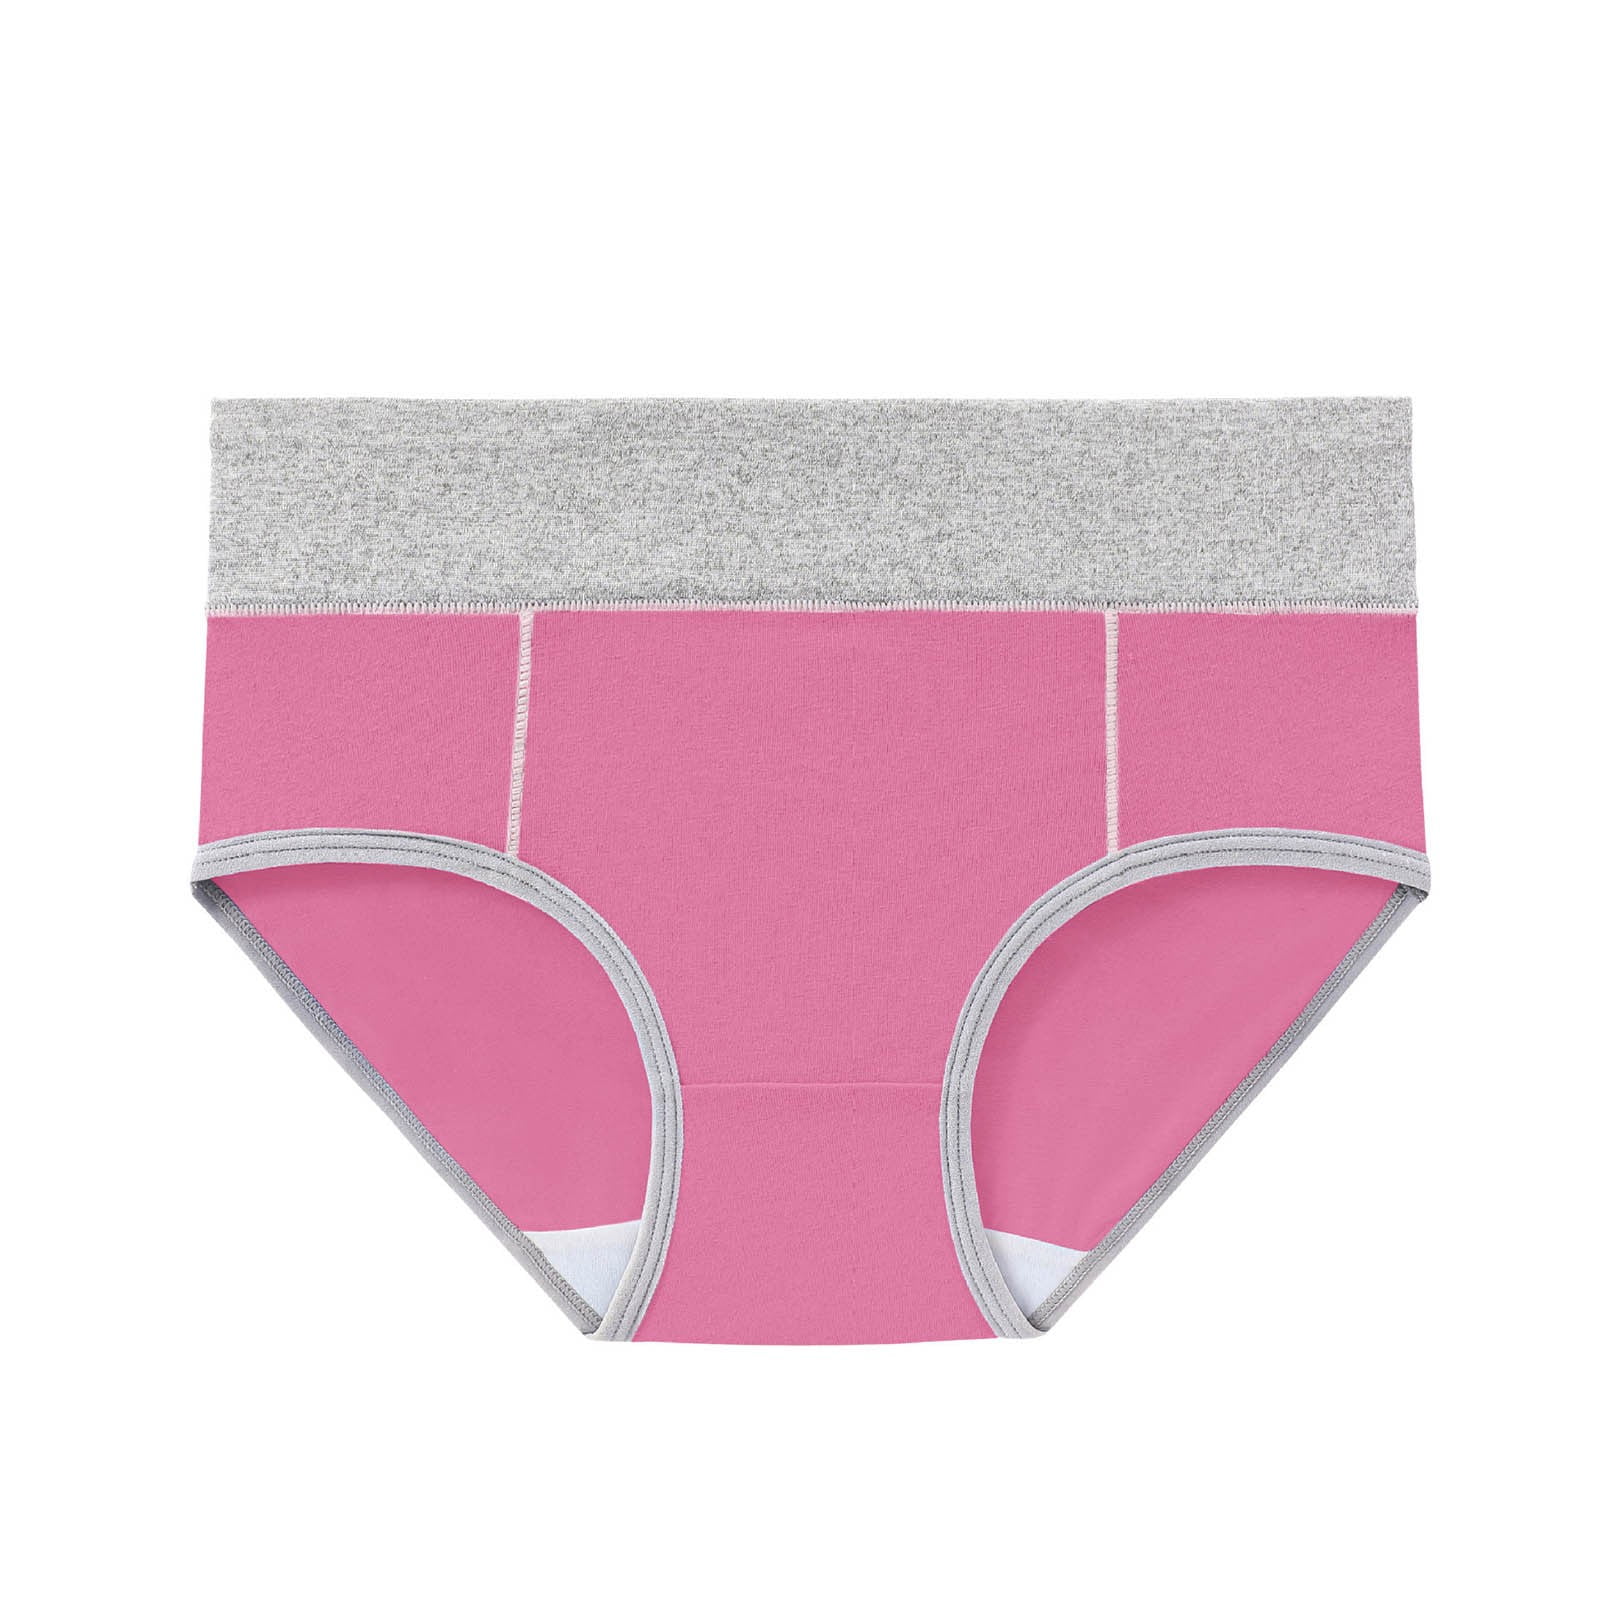 Hanes Originals Women’s Bikini Underwear, Breathable Cotton Stretch, 6-Pack